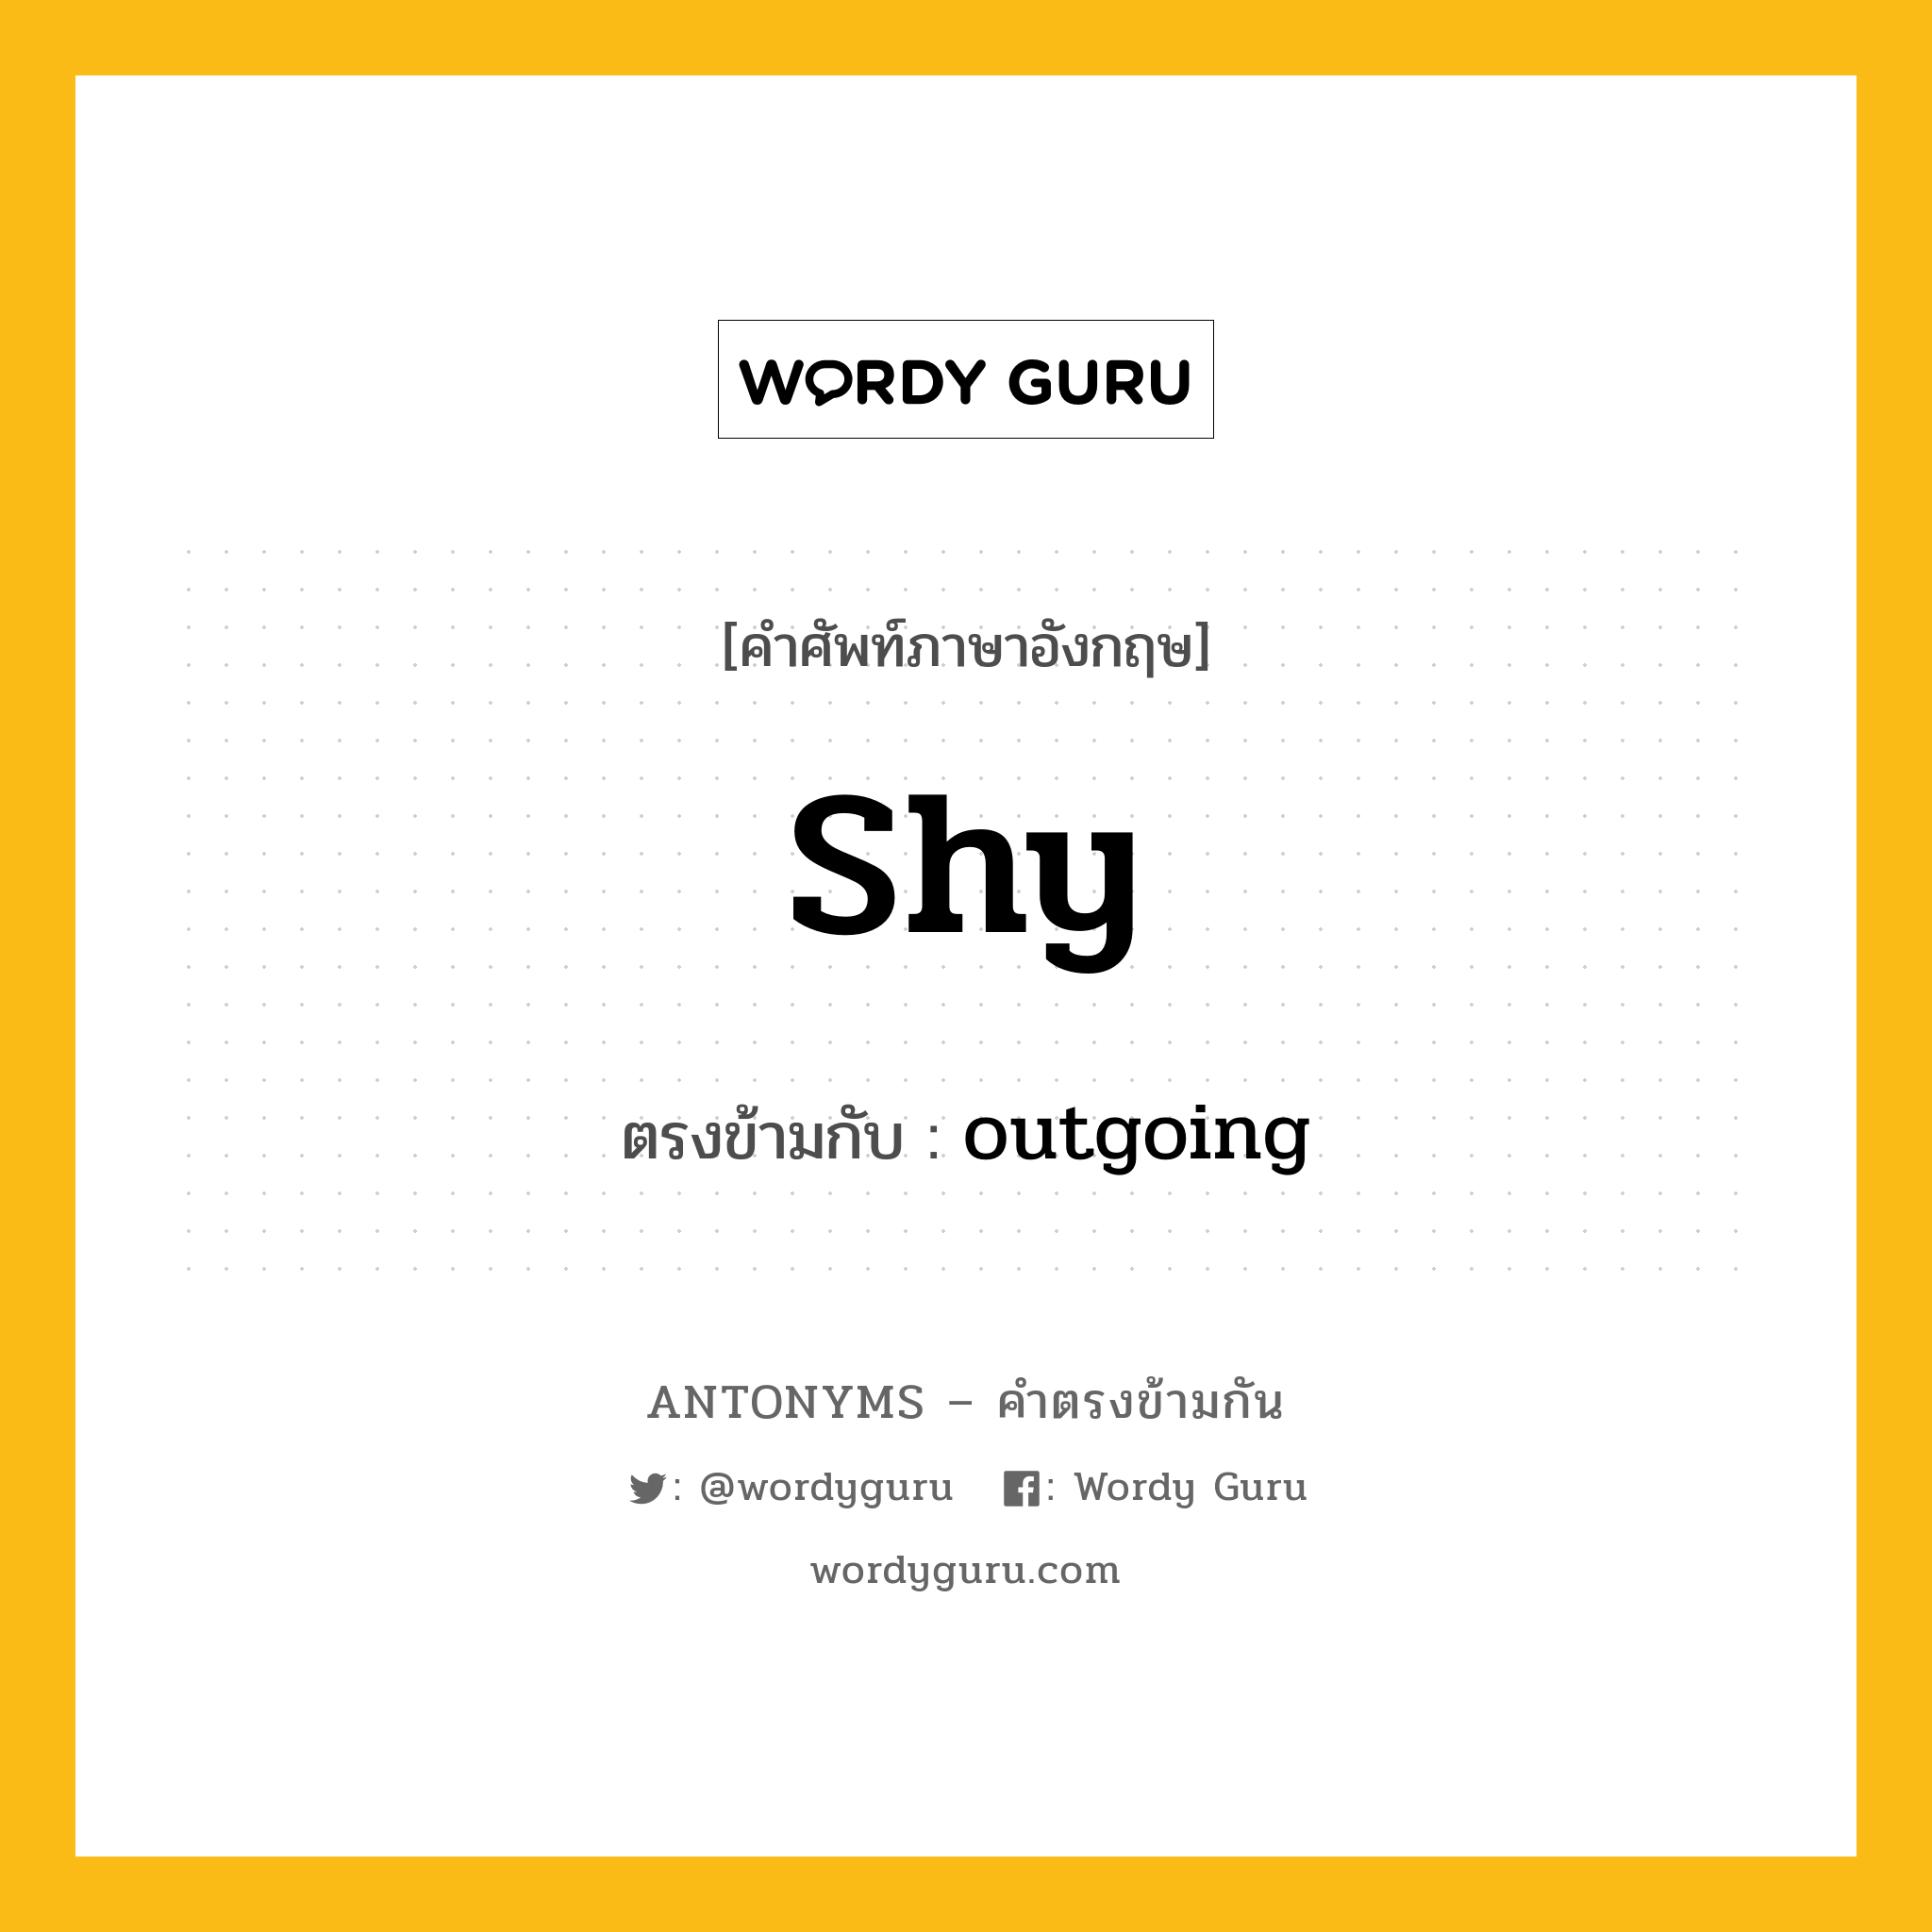 shy เป็นคำตรงข้ามกับคำไหนบ้าง?, คำศัพท์ภาษาอังกฤษ shy ตรงข้ามกับ outgoing หมวด outgoing